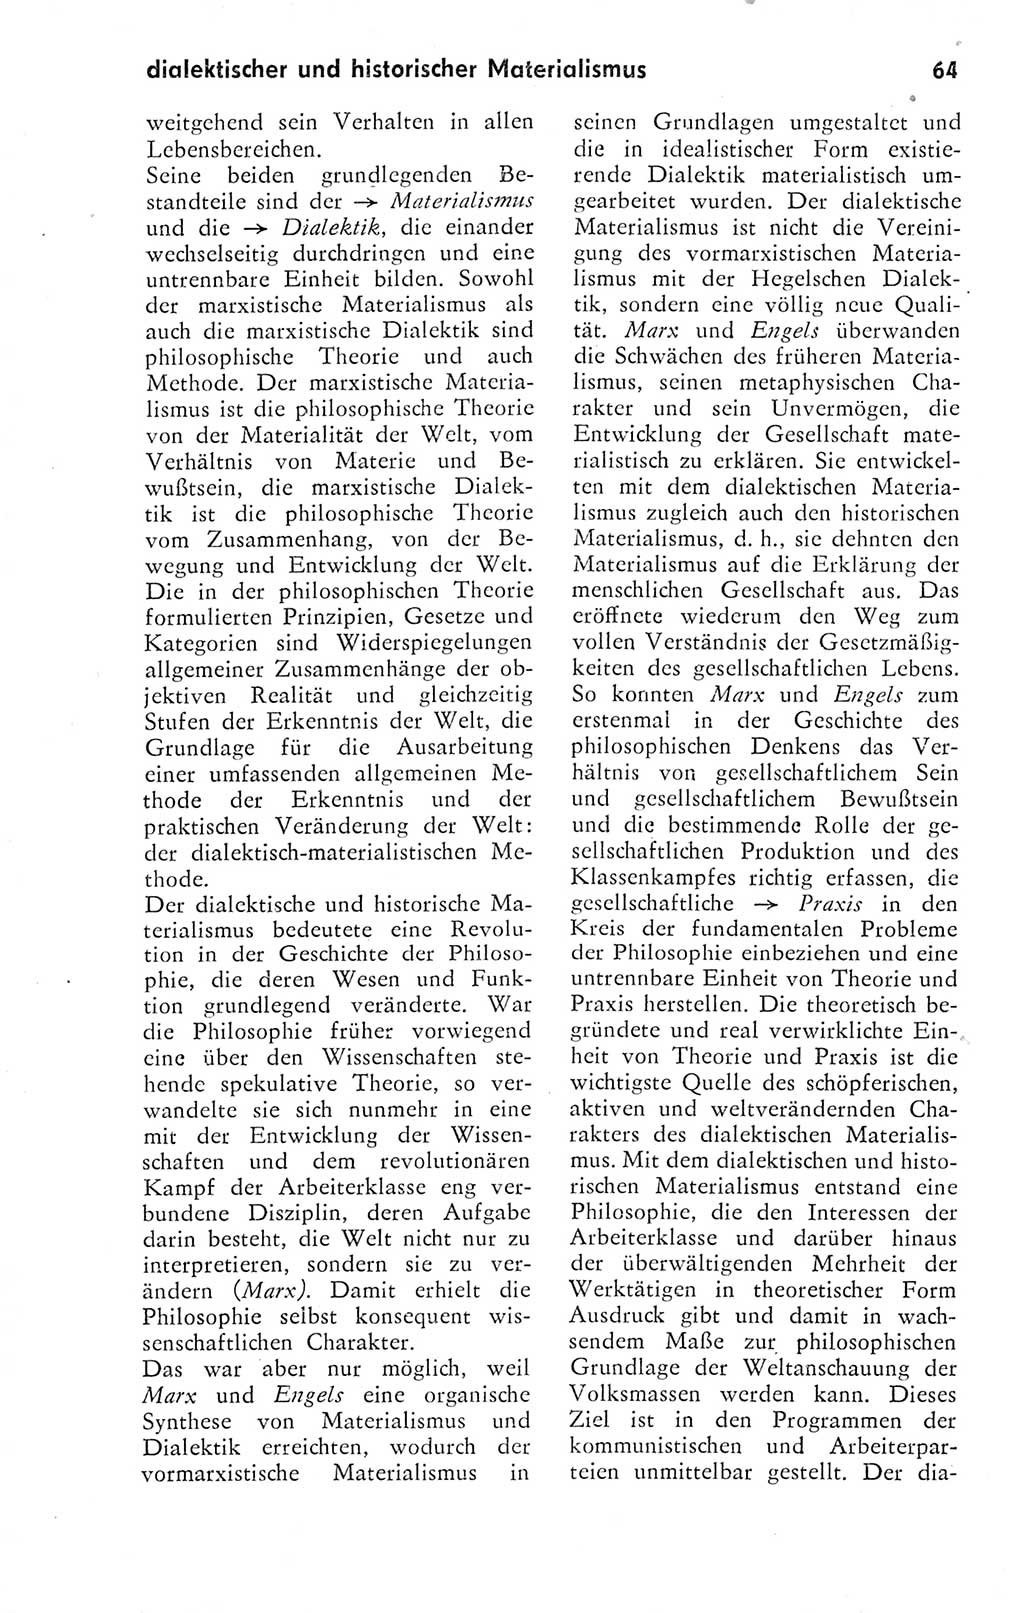 Kleines Wörterbuch der marxistisch-leninistischen Philosophie [Deutsche Demokratische Republik (DDR)] 1974, Seite 64 (Kl. Wb. ML Phil. DDR 1974, S. 64)